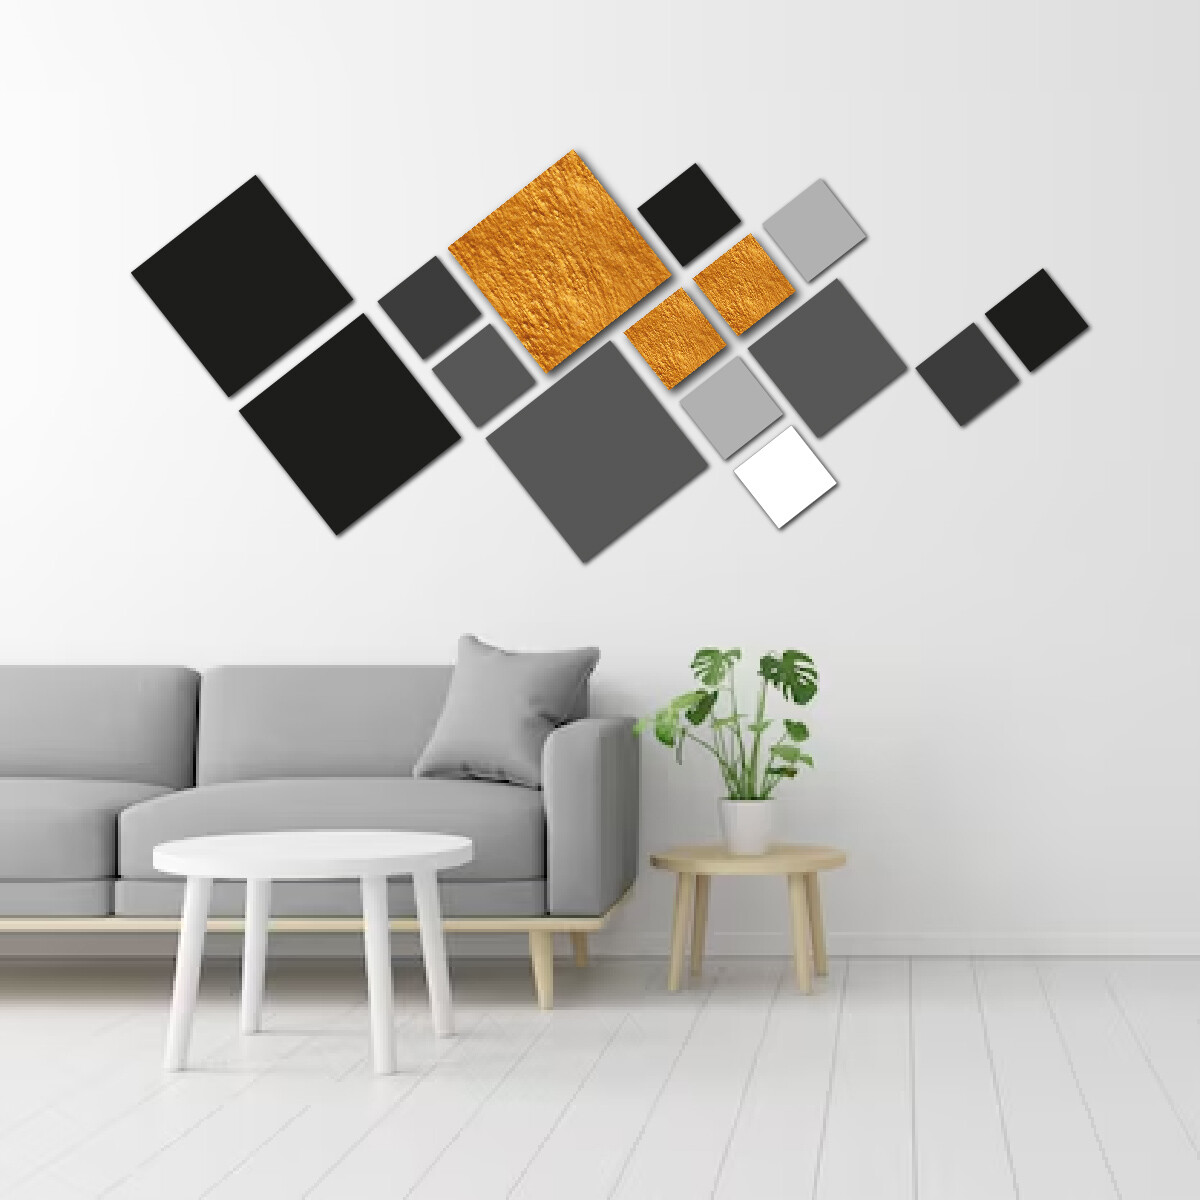 Cuadro Decorativo Moderno de Madera MDF Abstracto Incluye 15 Cuadrados de Diferente Tamaño y Color 